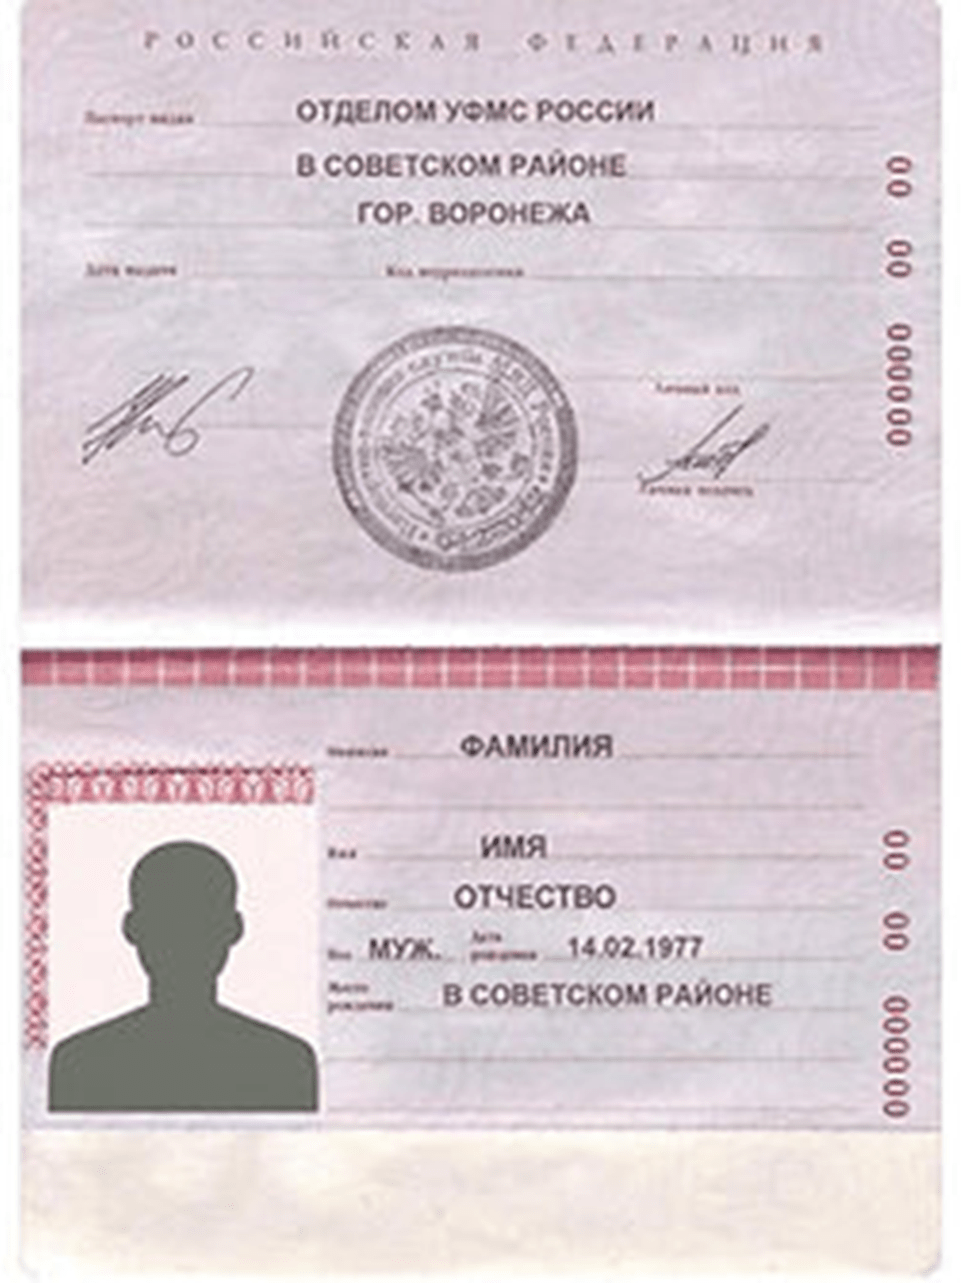 Страницы паспорта